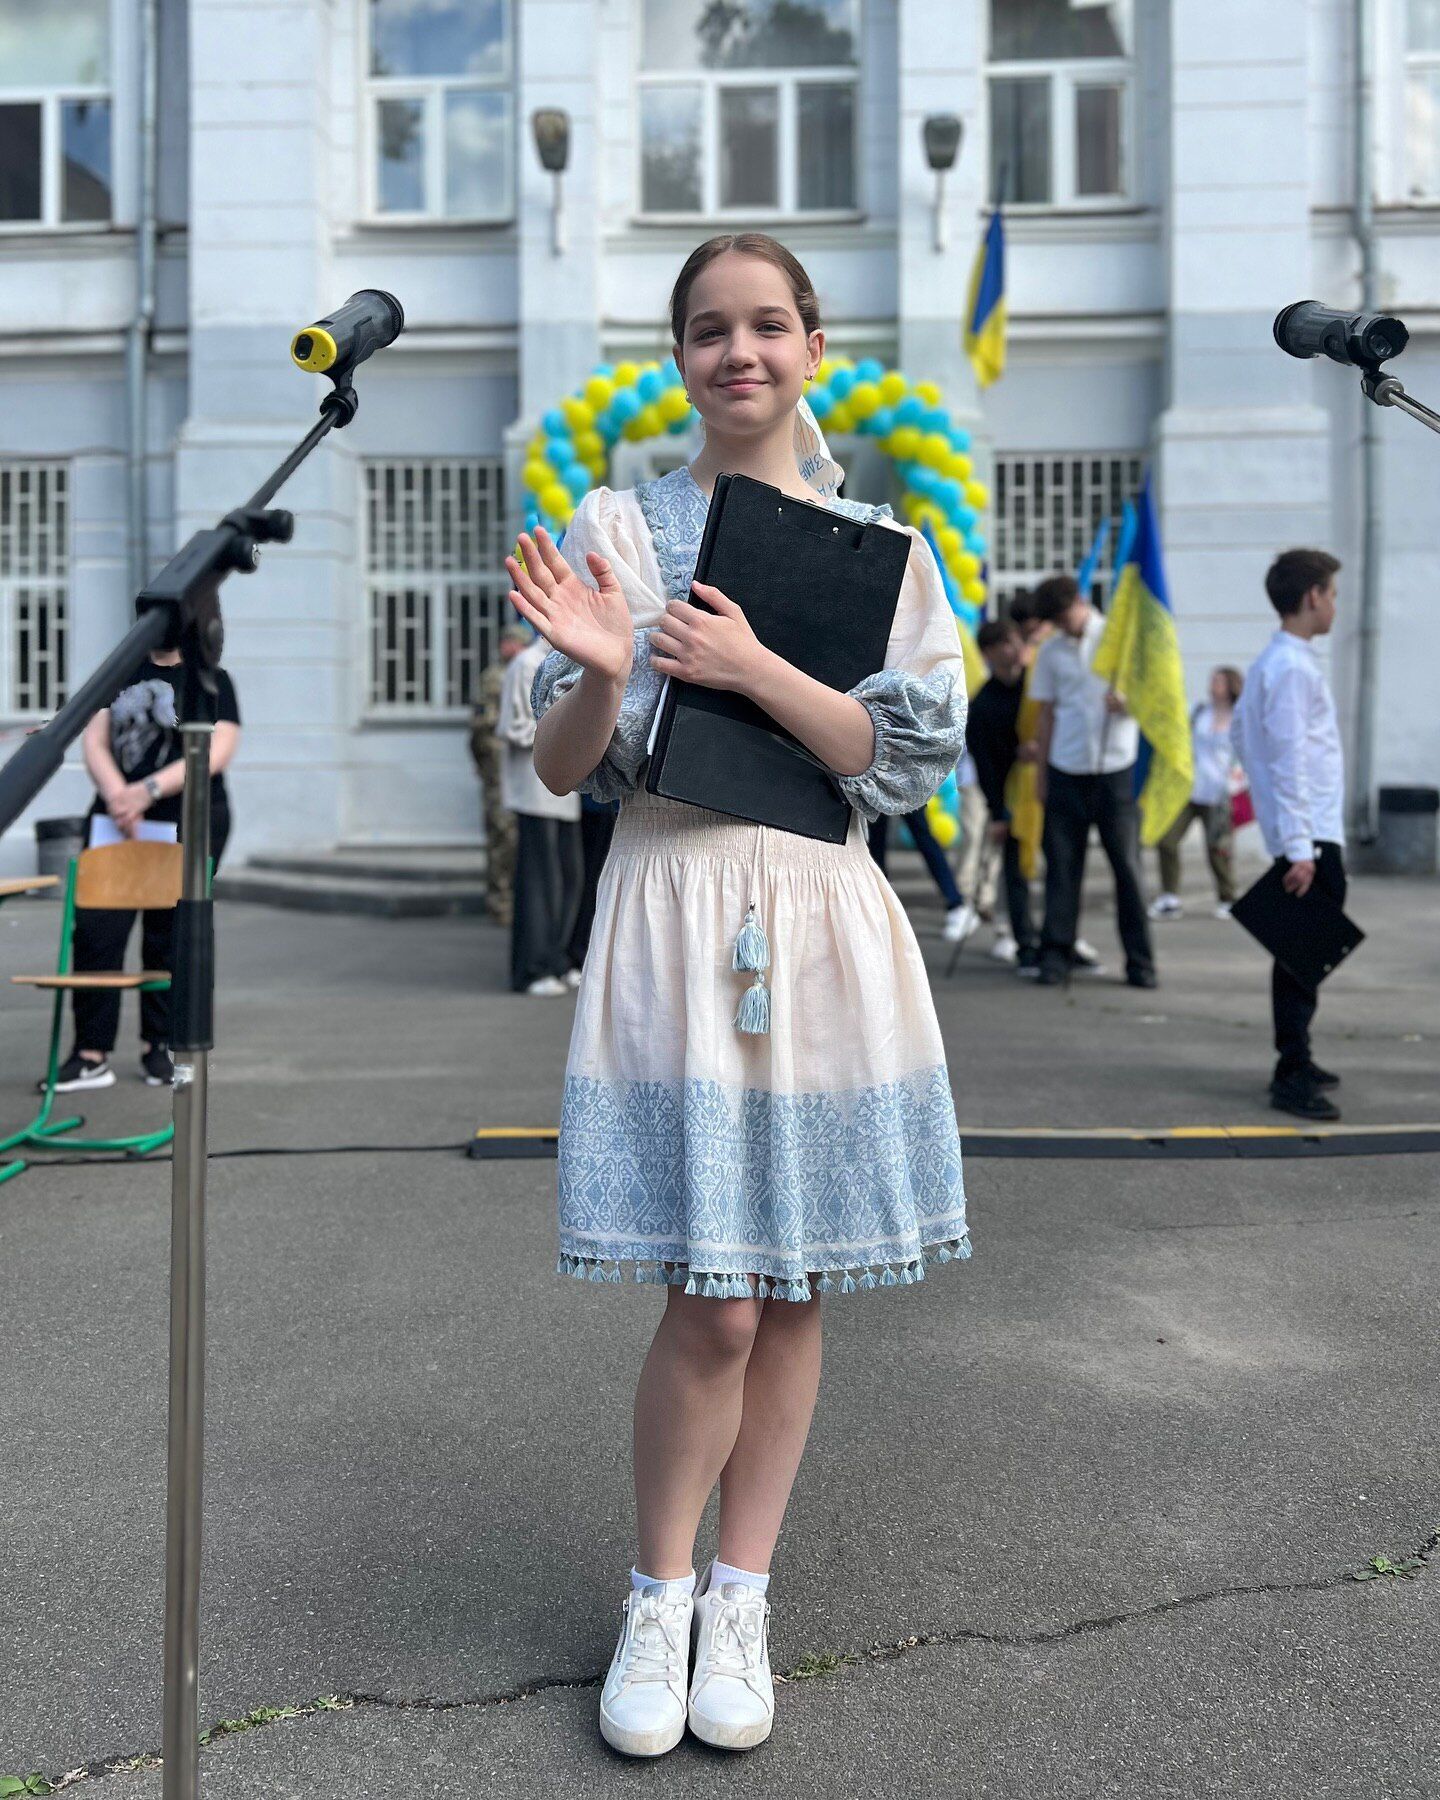 Сын Подкопаевой в мантии, дочь Трегубовой – в платье-вышиванке: украинские звезды показали своих детей на последнем звонке. Фото